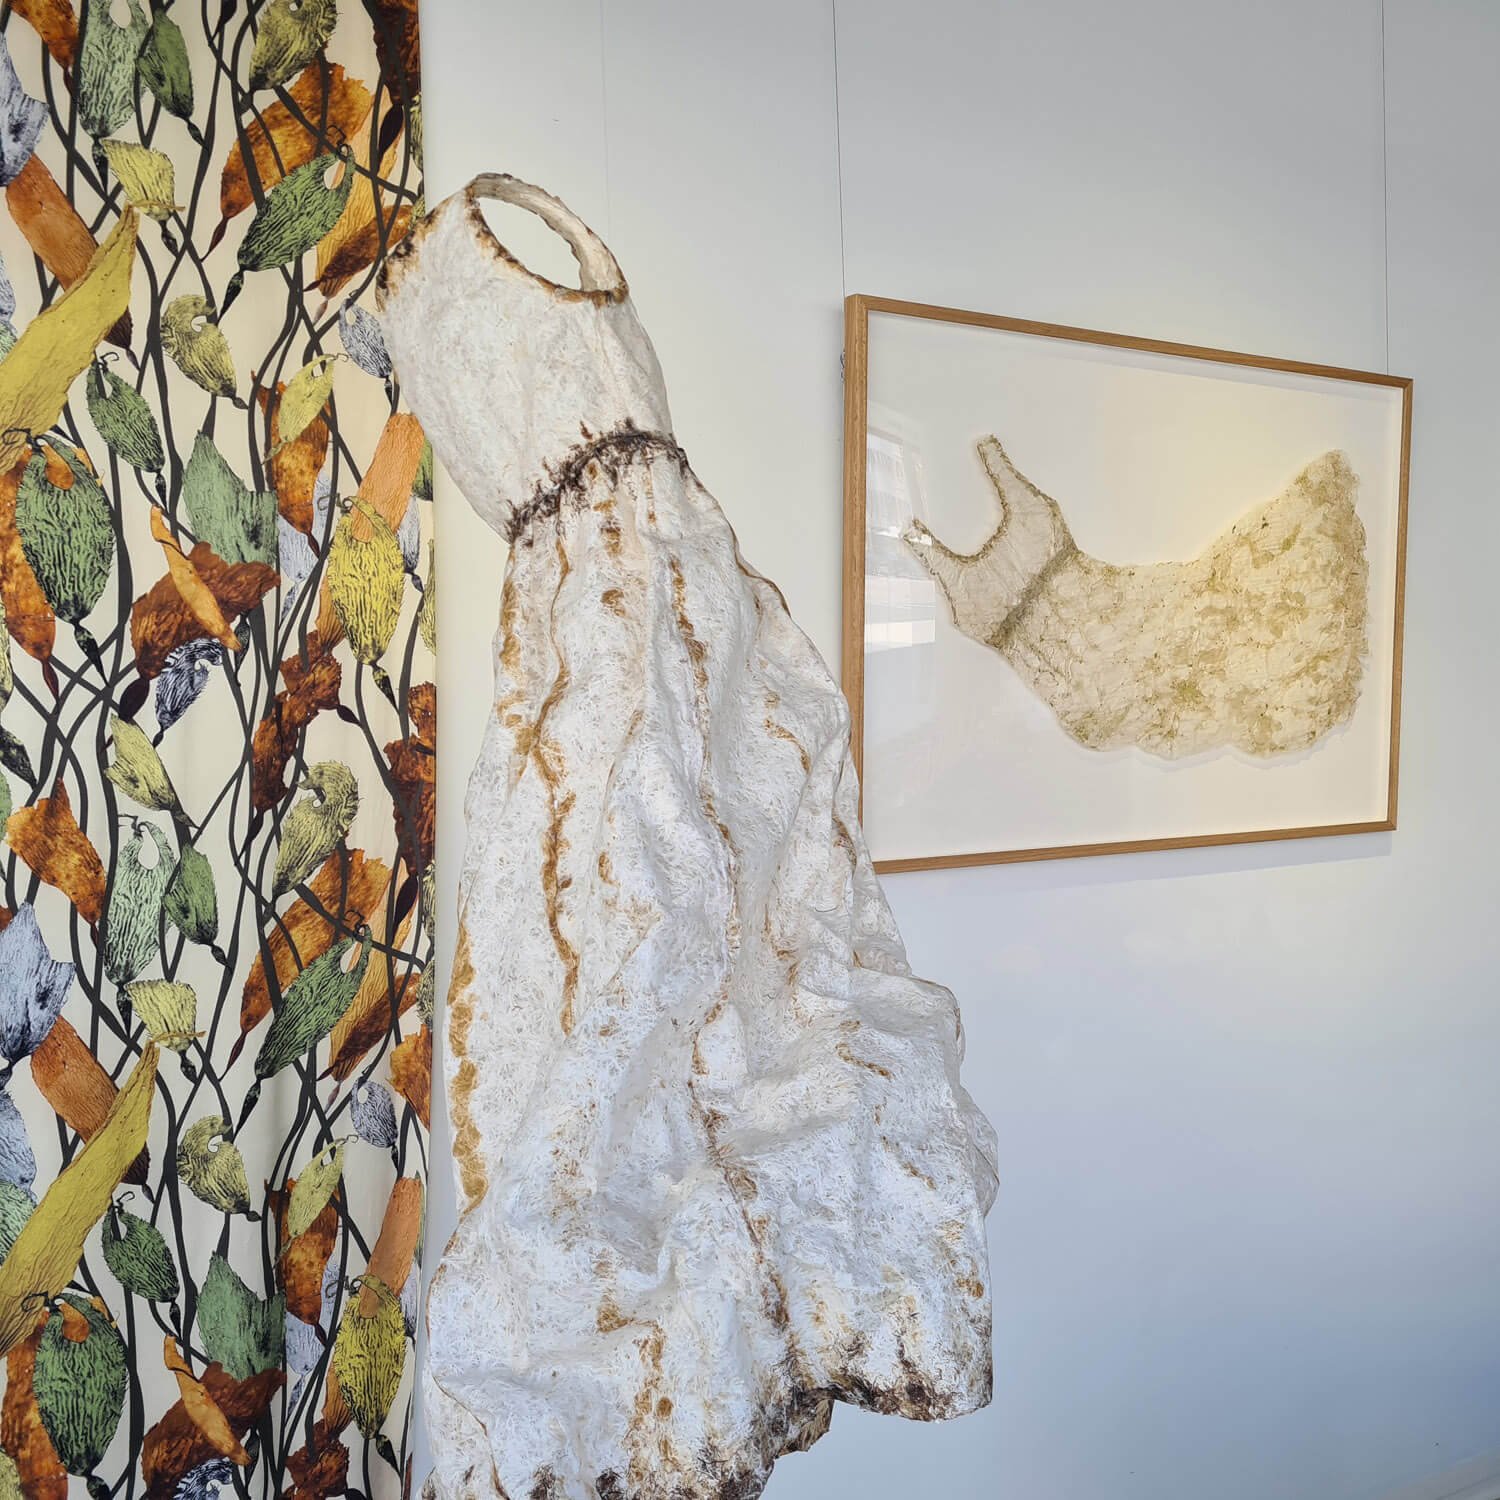 fabric by Deborah Wace, seaweed paper artwork by Catherine Stringer